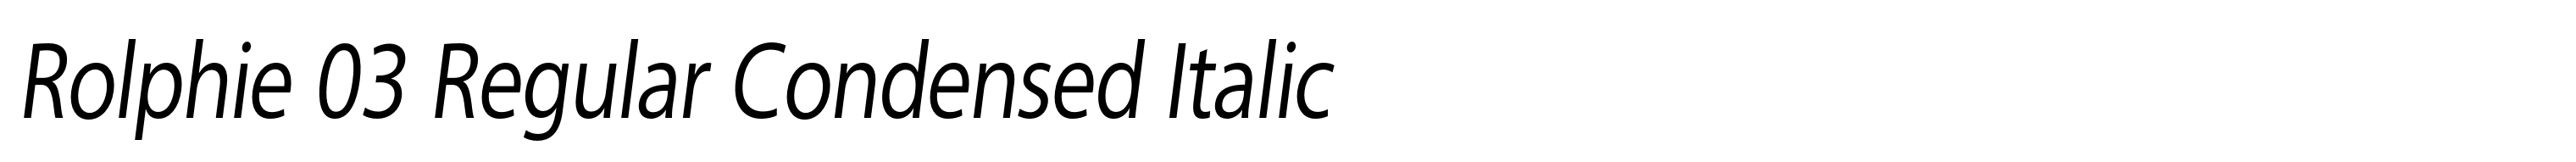 Rolphie 03 Regular Condensed Italic